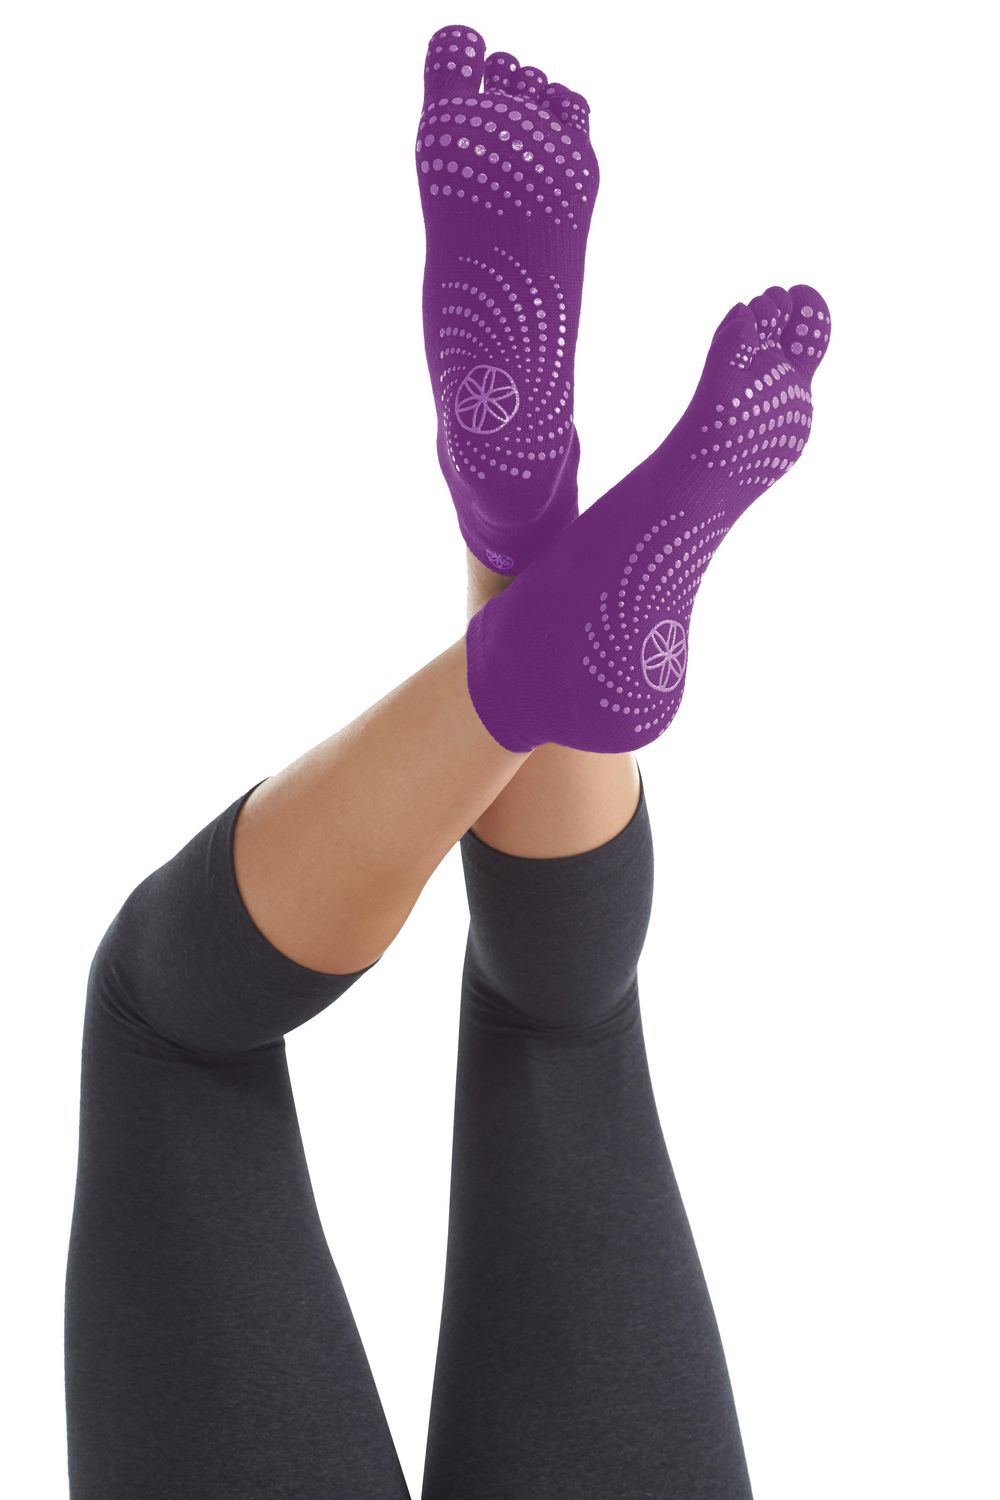 Gaiam Performance Super Grippy Yoga Socks - Gaiam